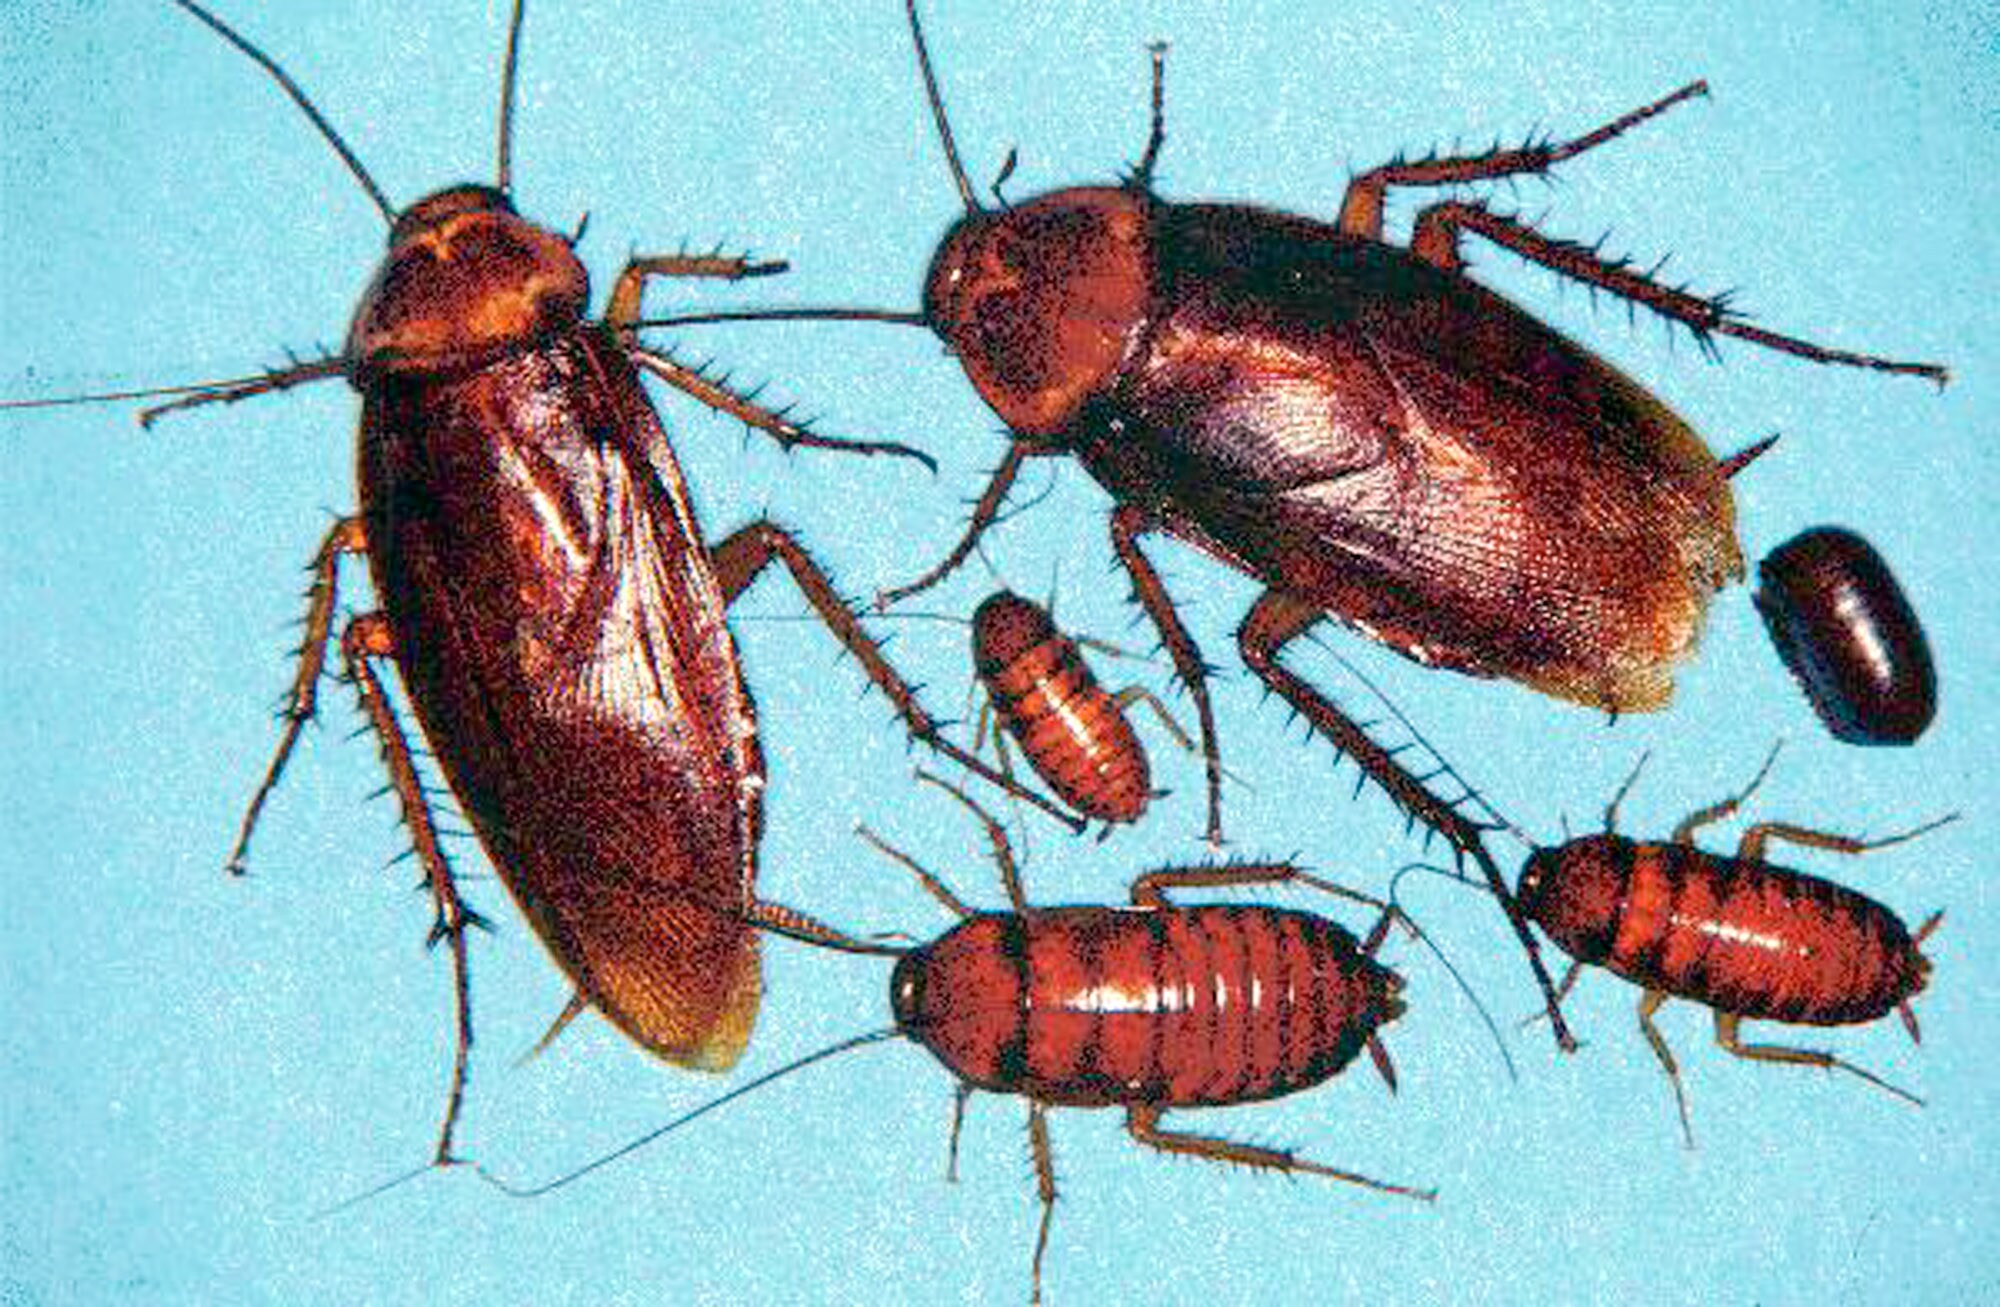 DNA kakkerlakken verklaart waarom ze zich zo graag nestelen op vieze plaatsen